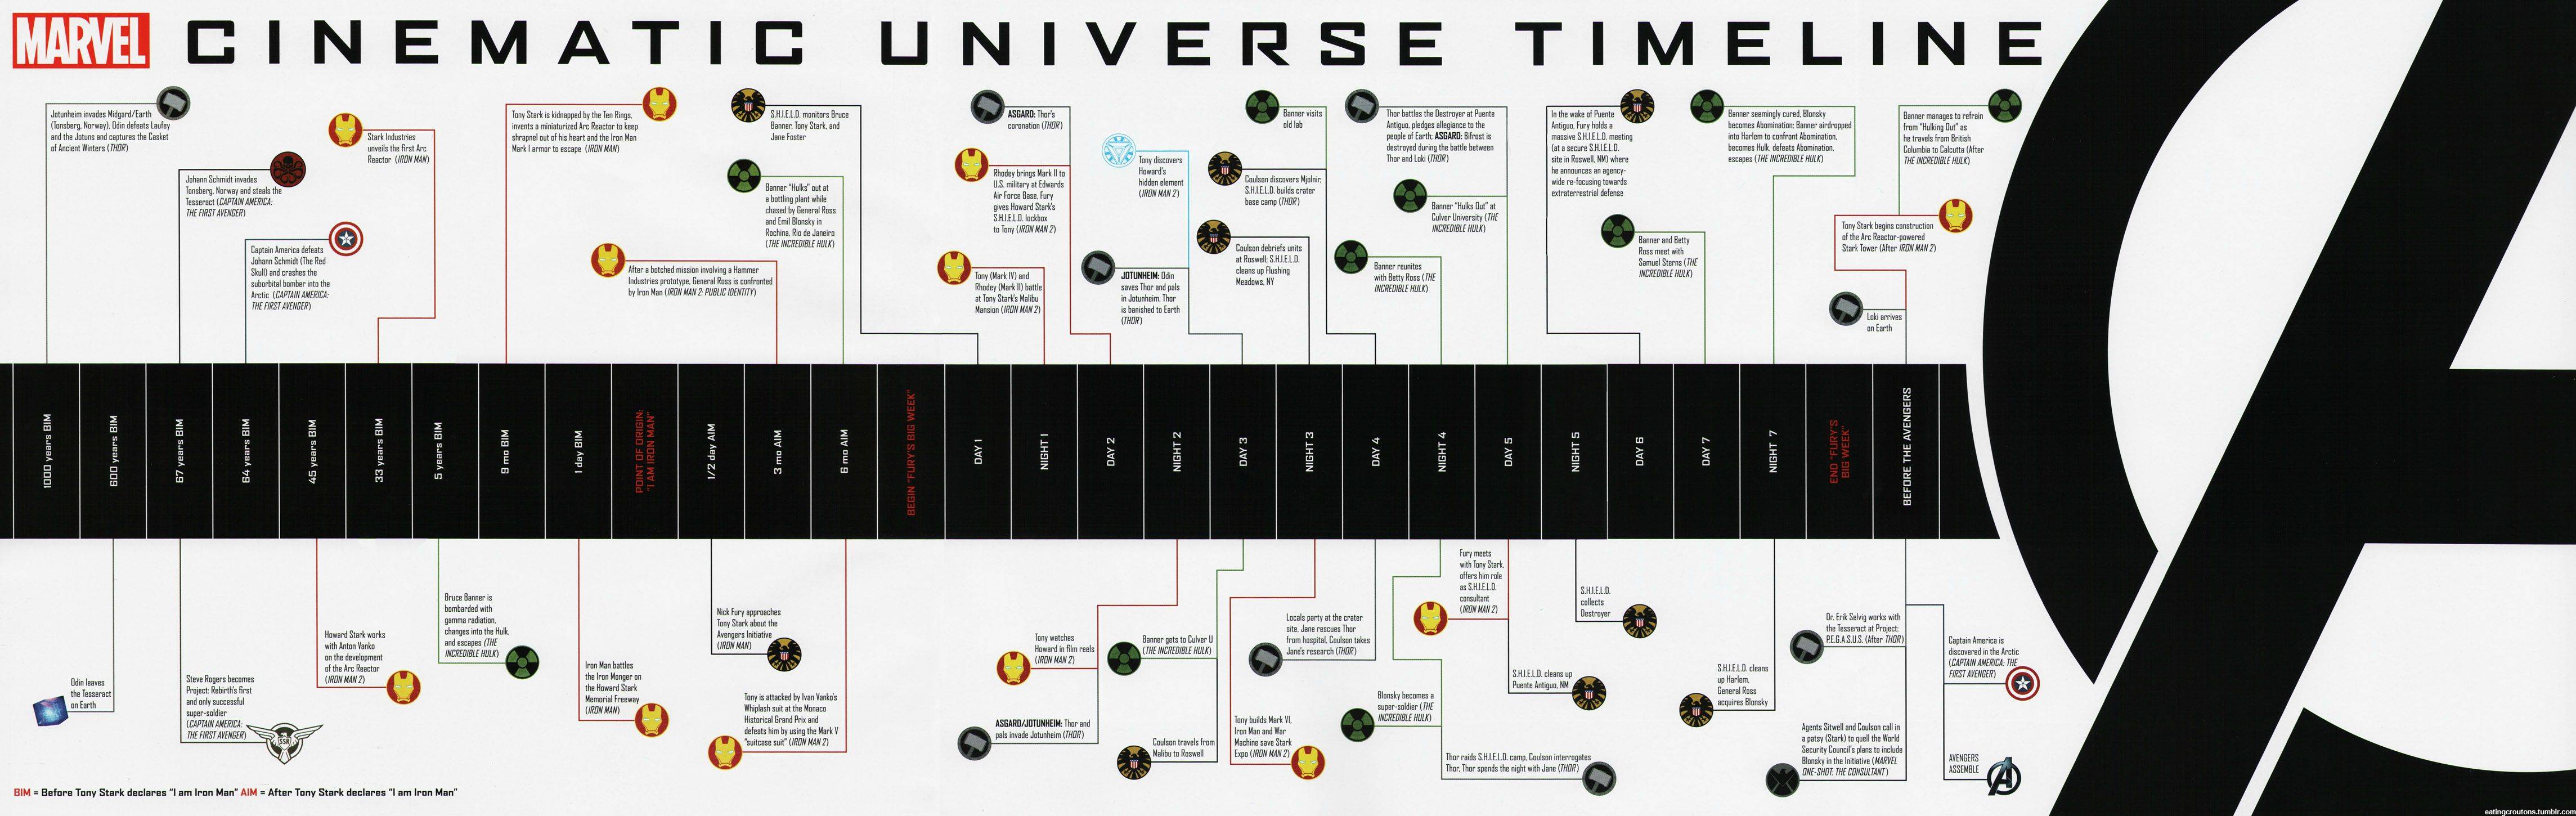 Marvel-Movie-Universe.jpeg